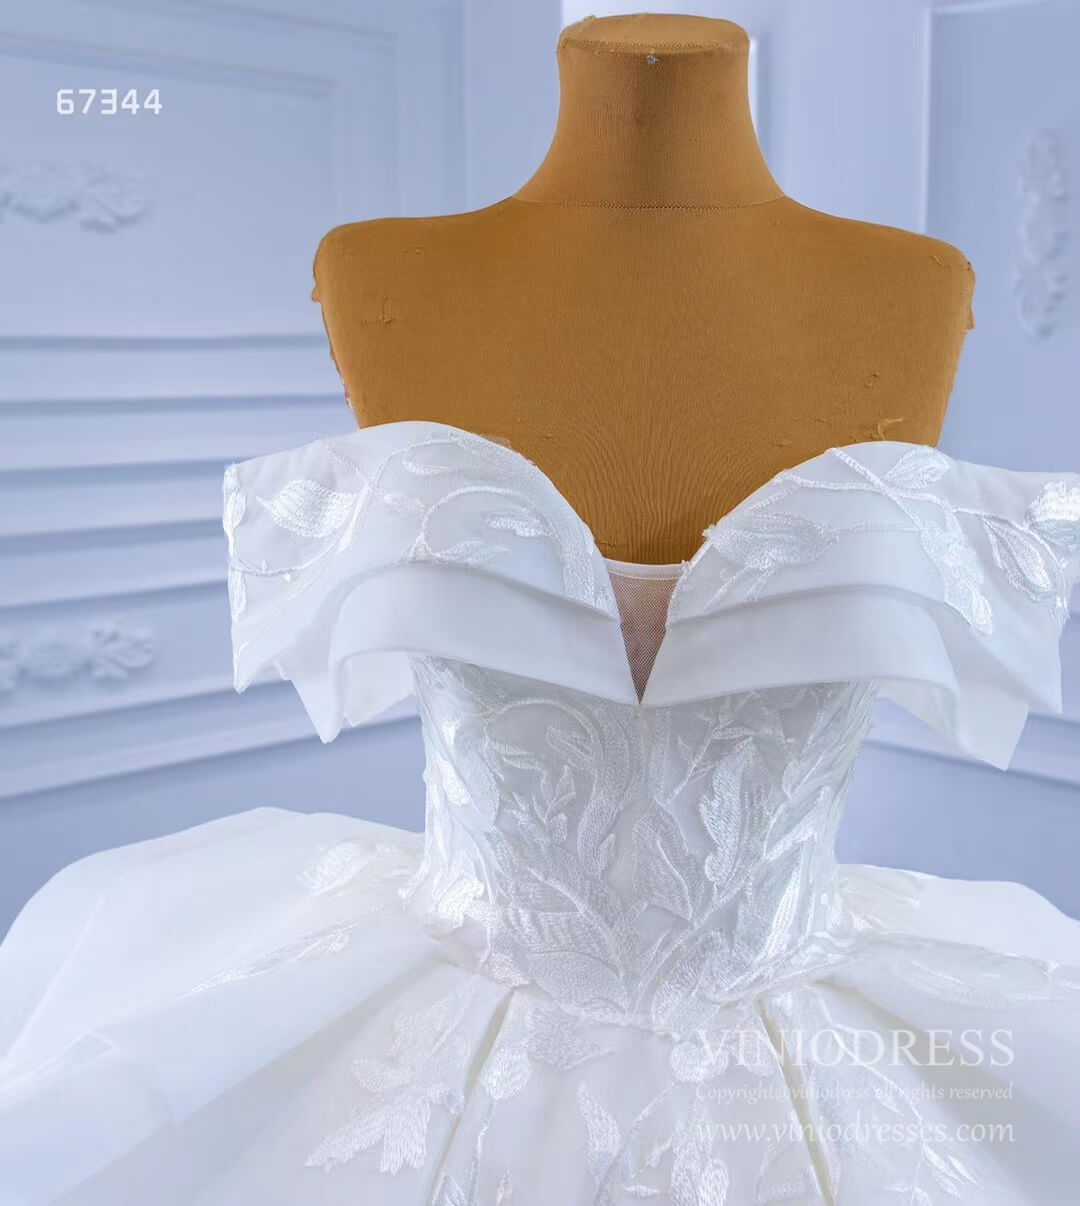 Off Shoulder Lace Applique Wedding Gown Dubai Wedding Dress 67344-wedding dresses-Viniodress-Viniodress